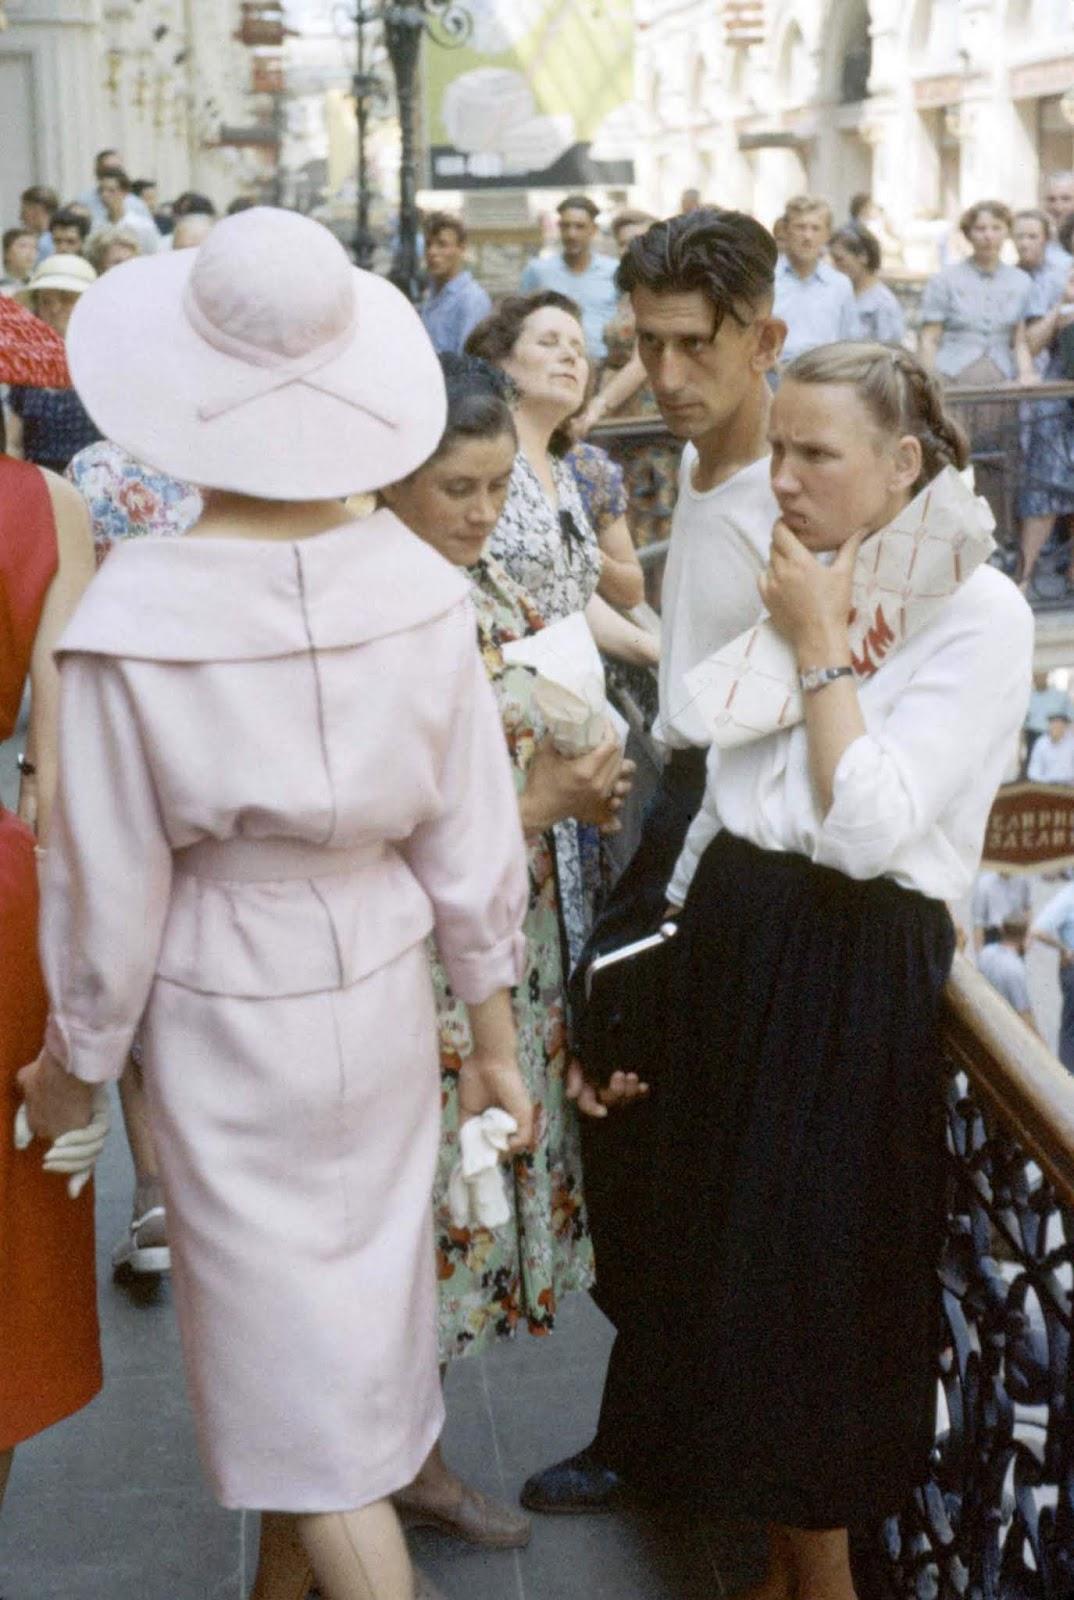 Modèles Dior dans les rues de Moscou soviétique, 1959